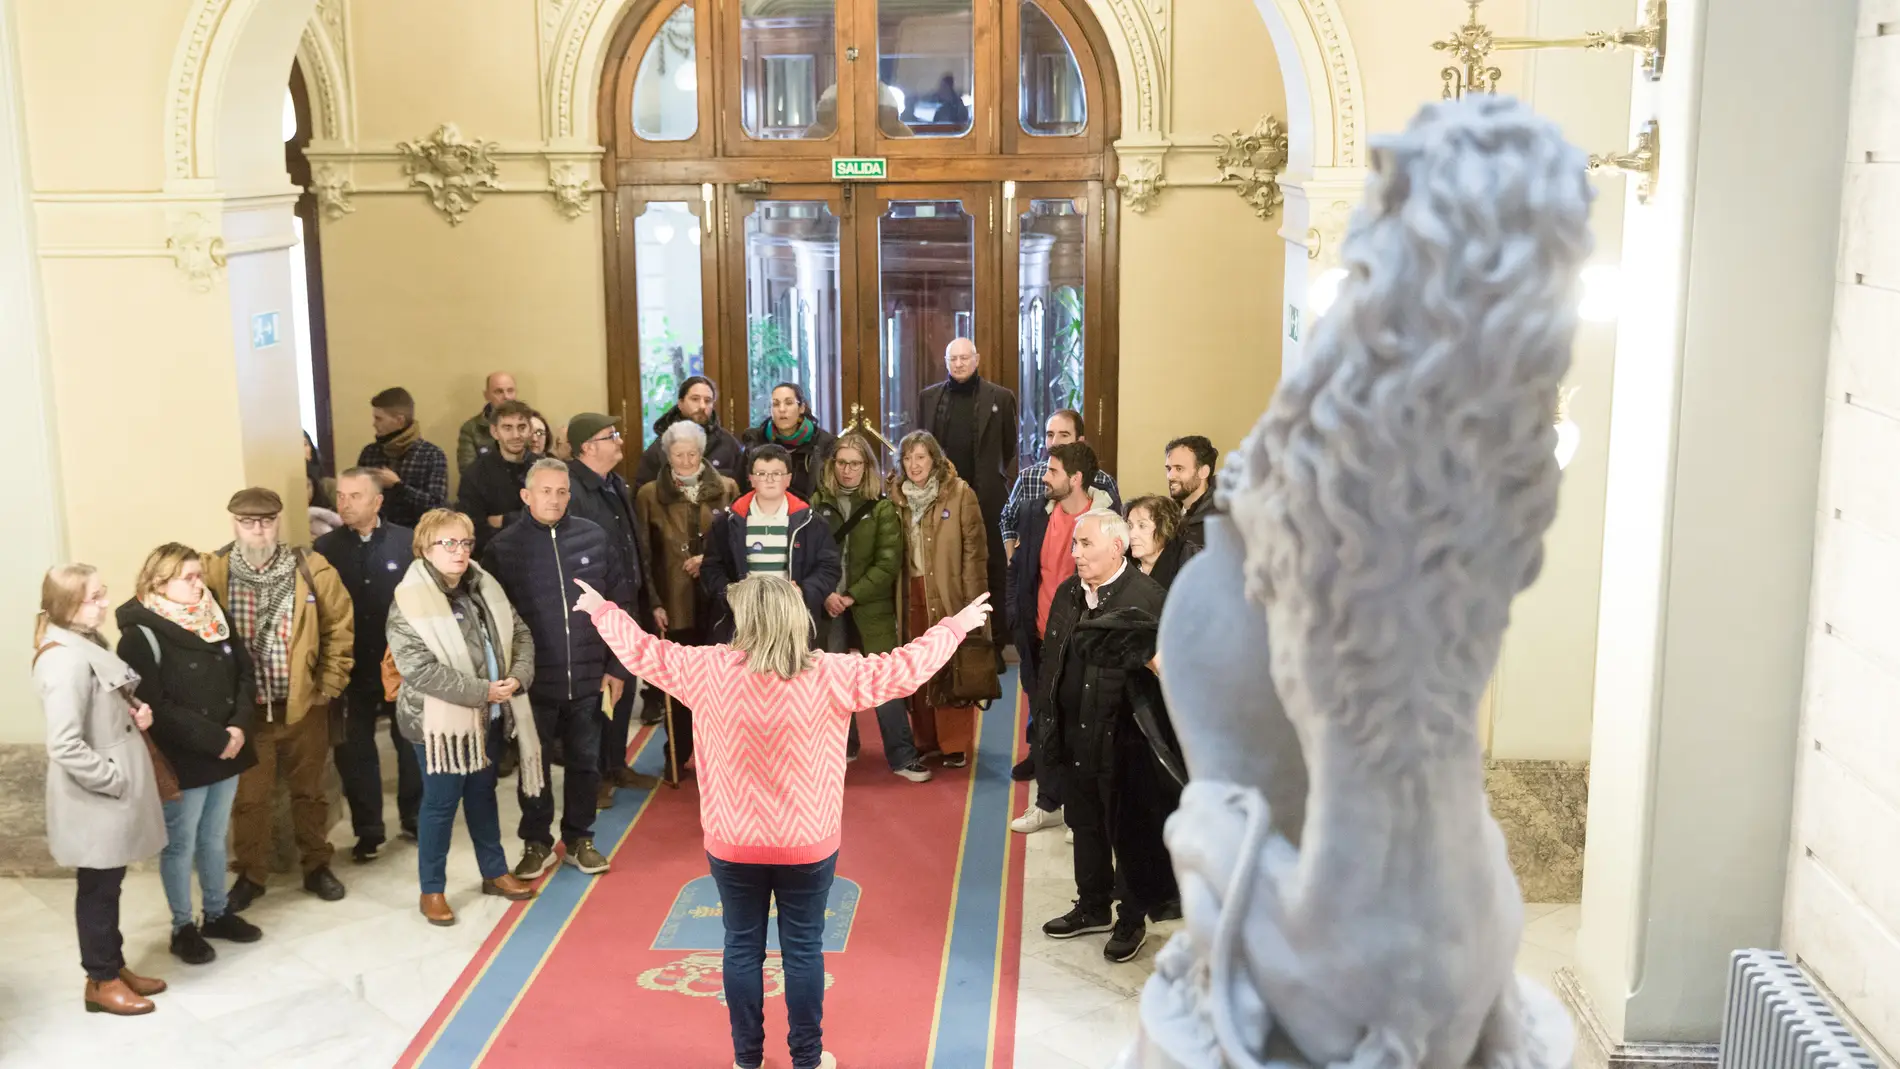 Cerca de 3.900 personas visitaron el palacete del parlamento asturiano